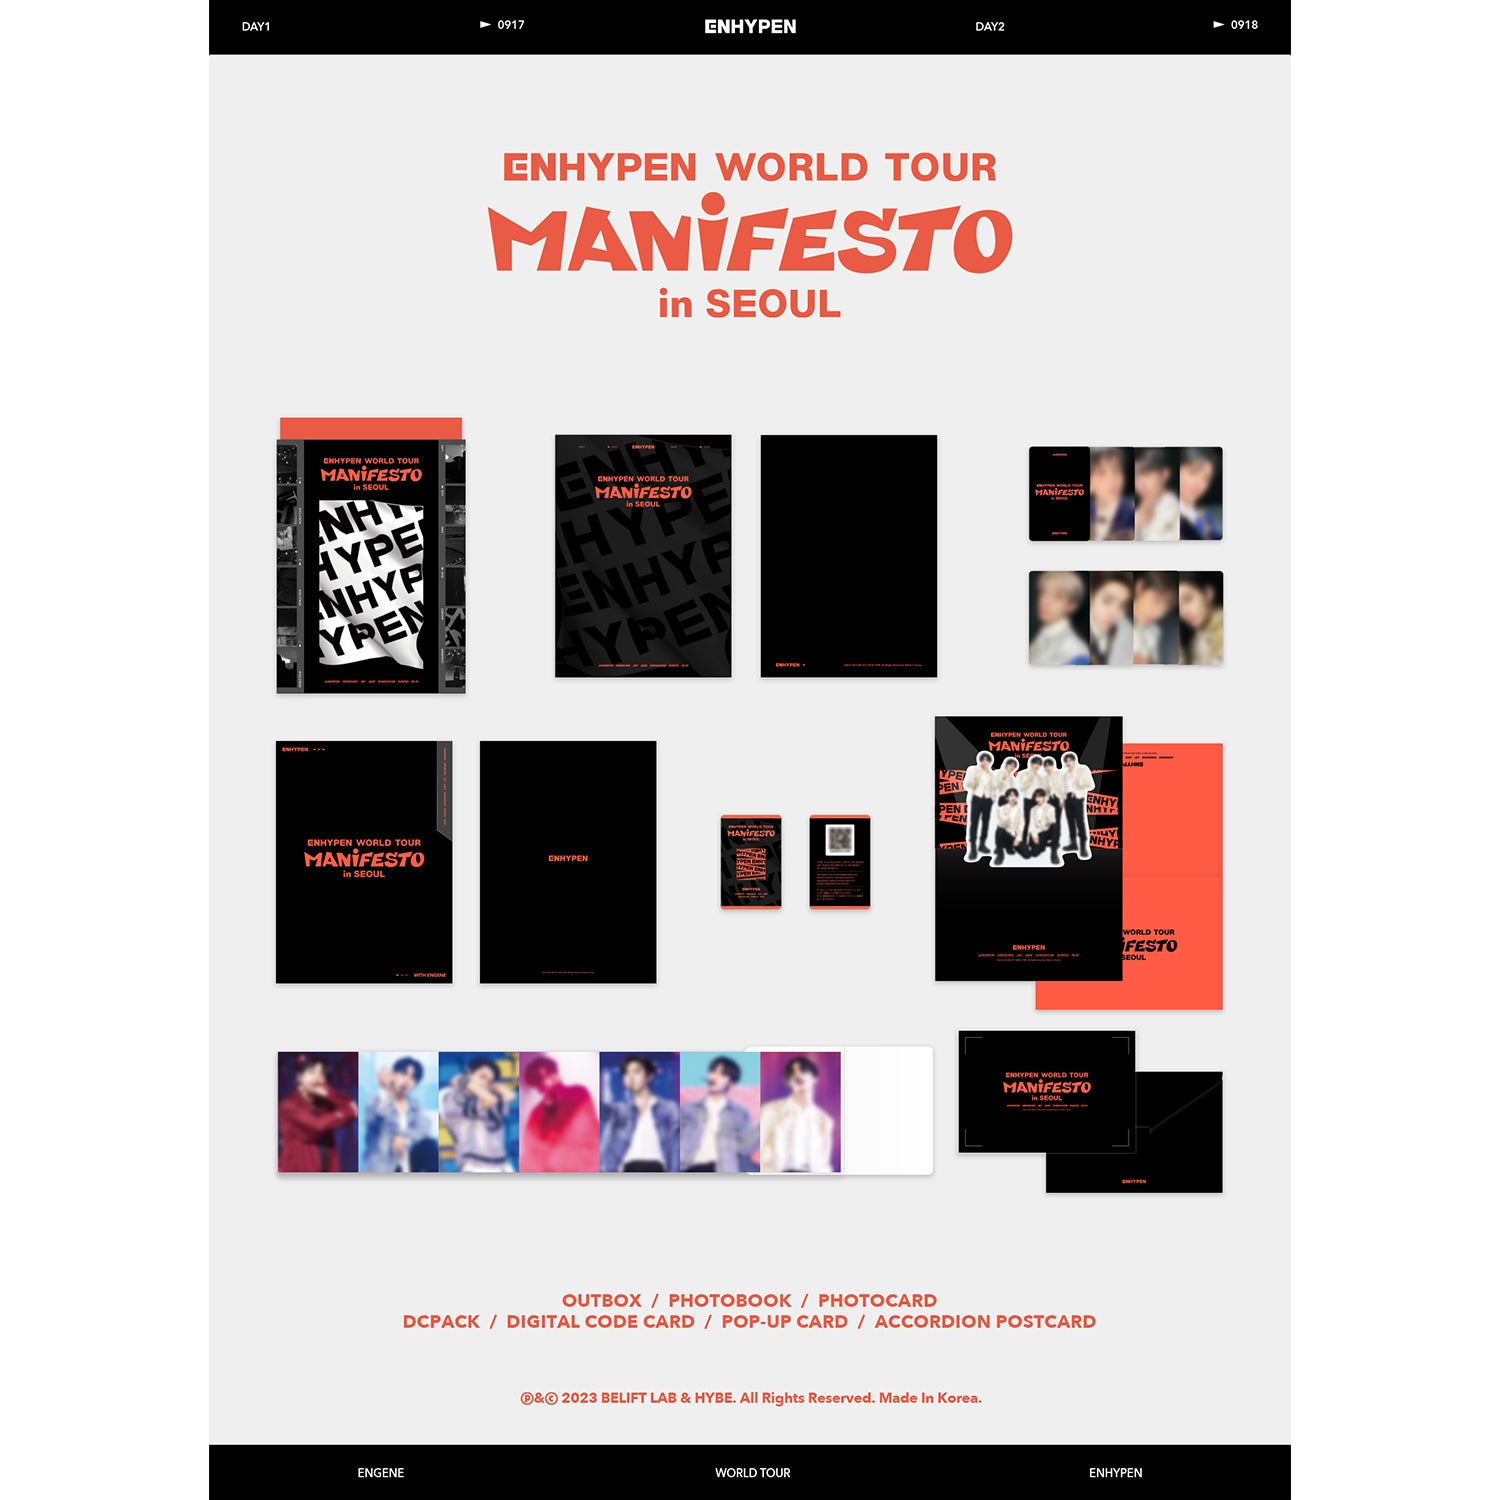 ENHYPEN WORLD TOUR 'MANIFESTO' IN SEOUL (DIGITAL CODE) COVER